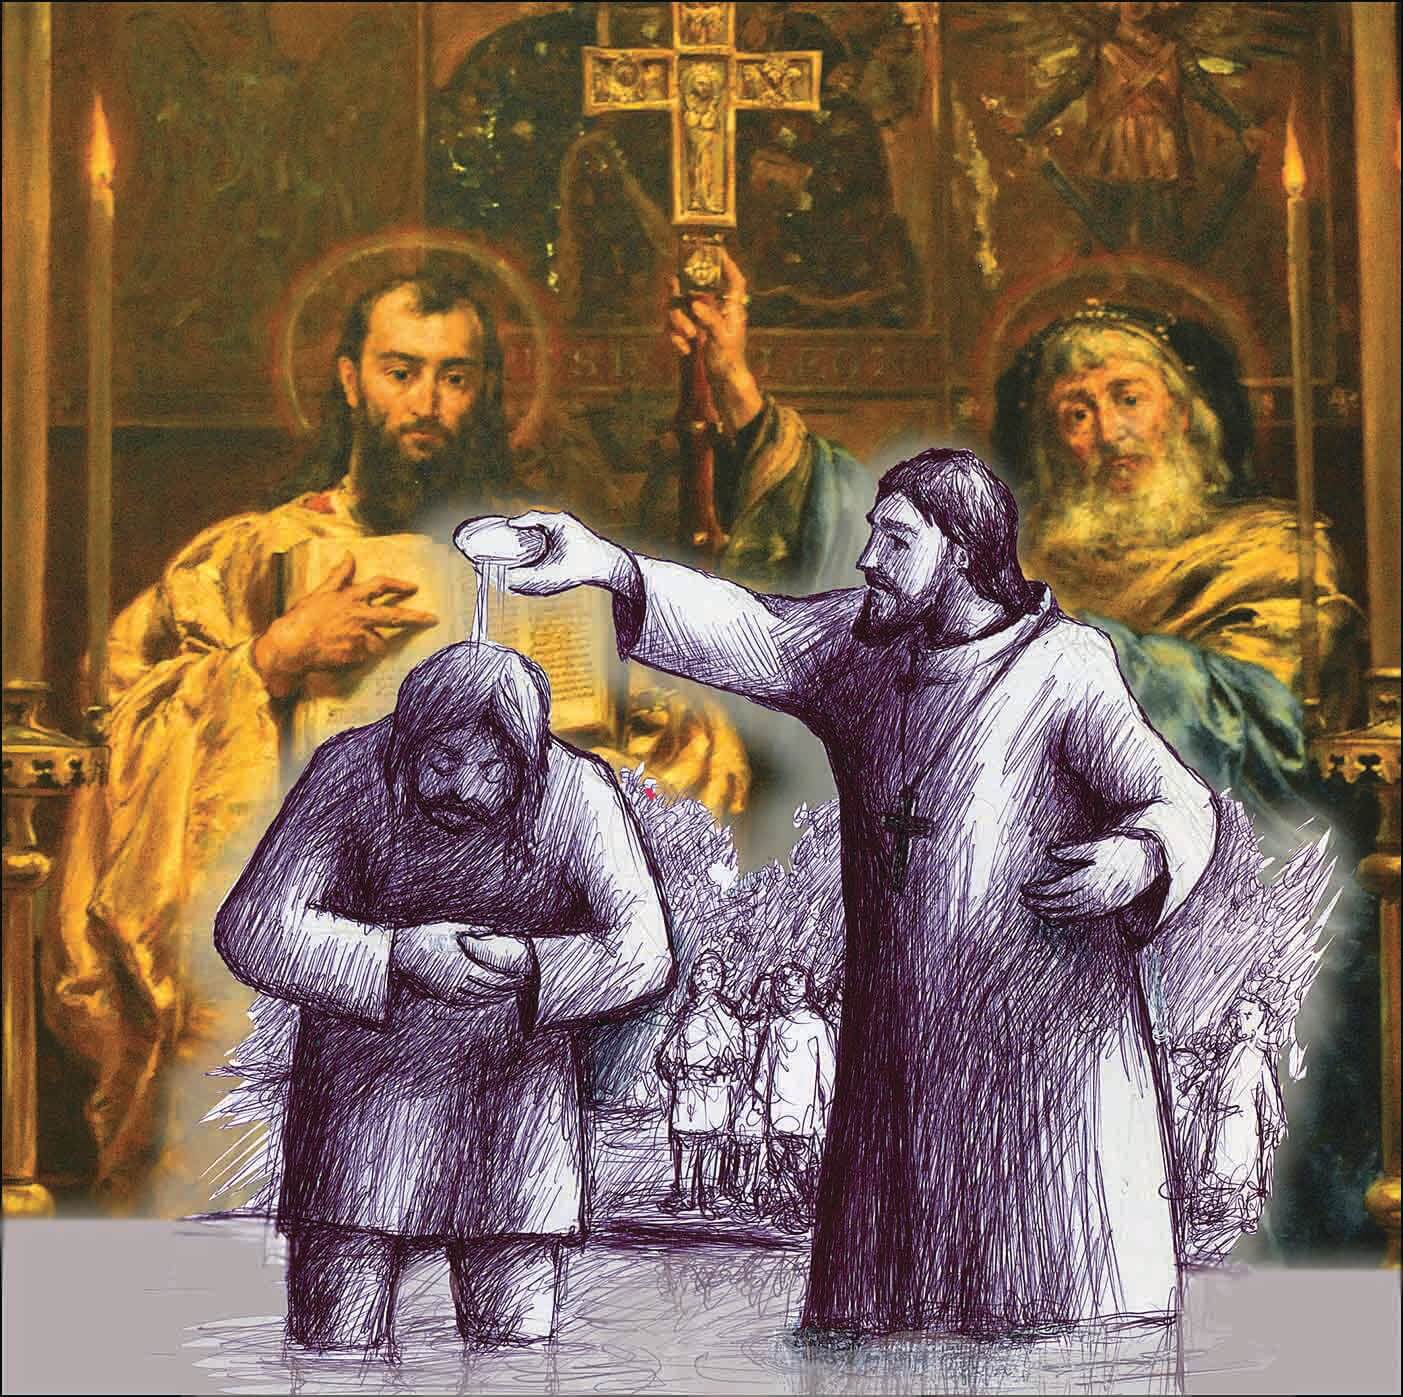 Misjonarz, który ochrzcił Rybnik około roku 900 (!), miał się nazywać Osław, a patronami tego wydarzenia byli święci Cyryl i Metody